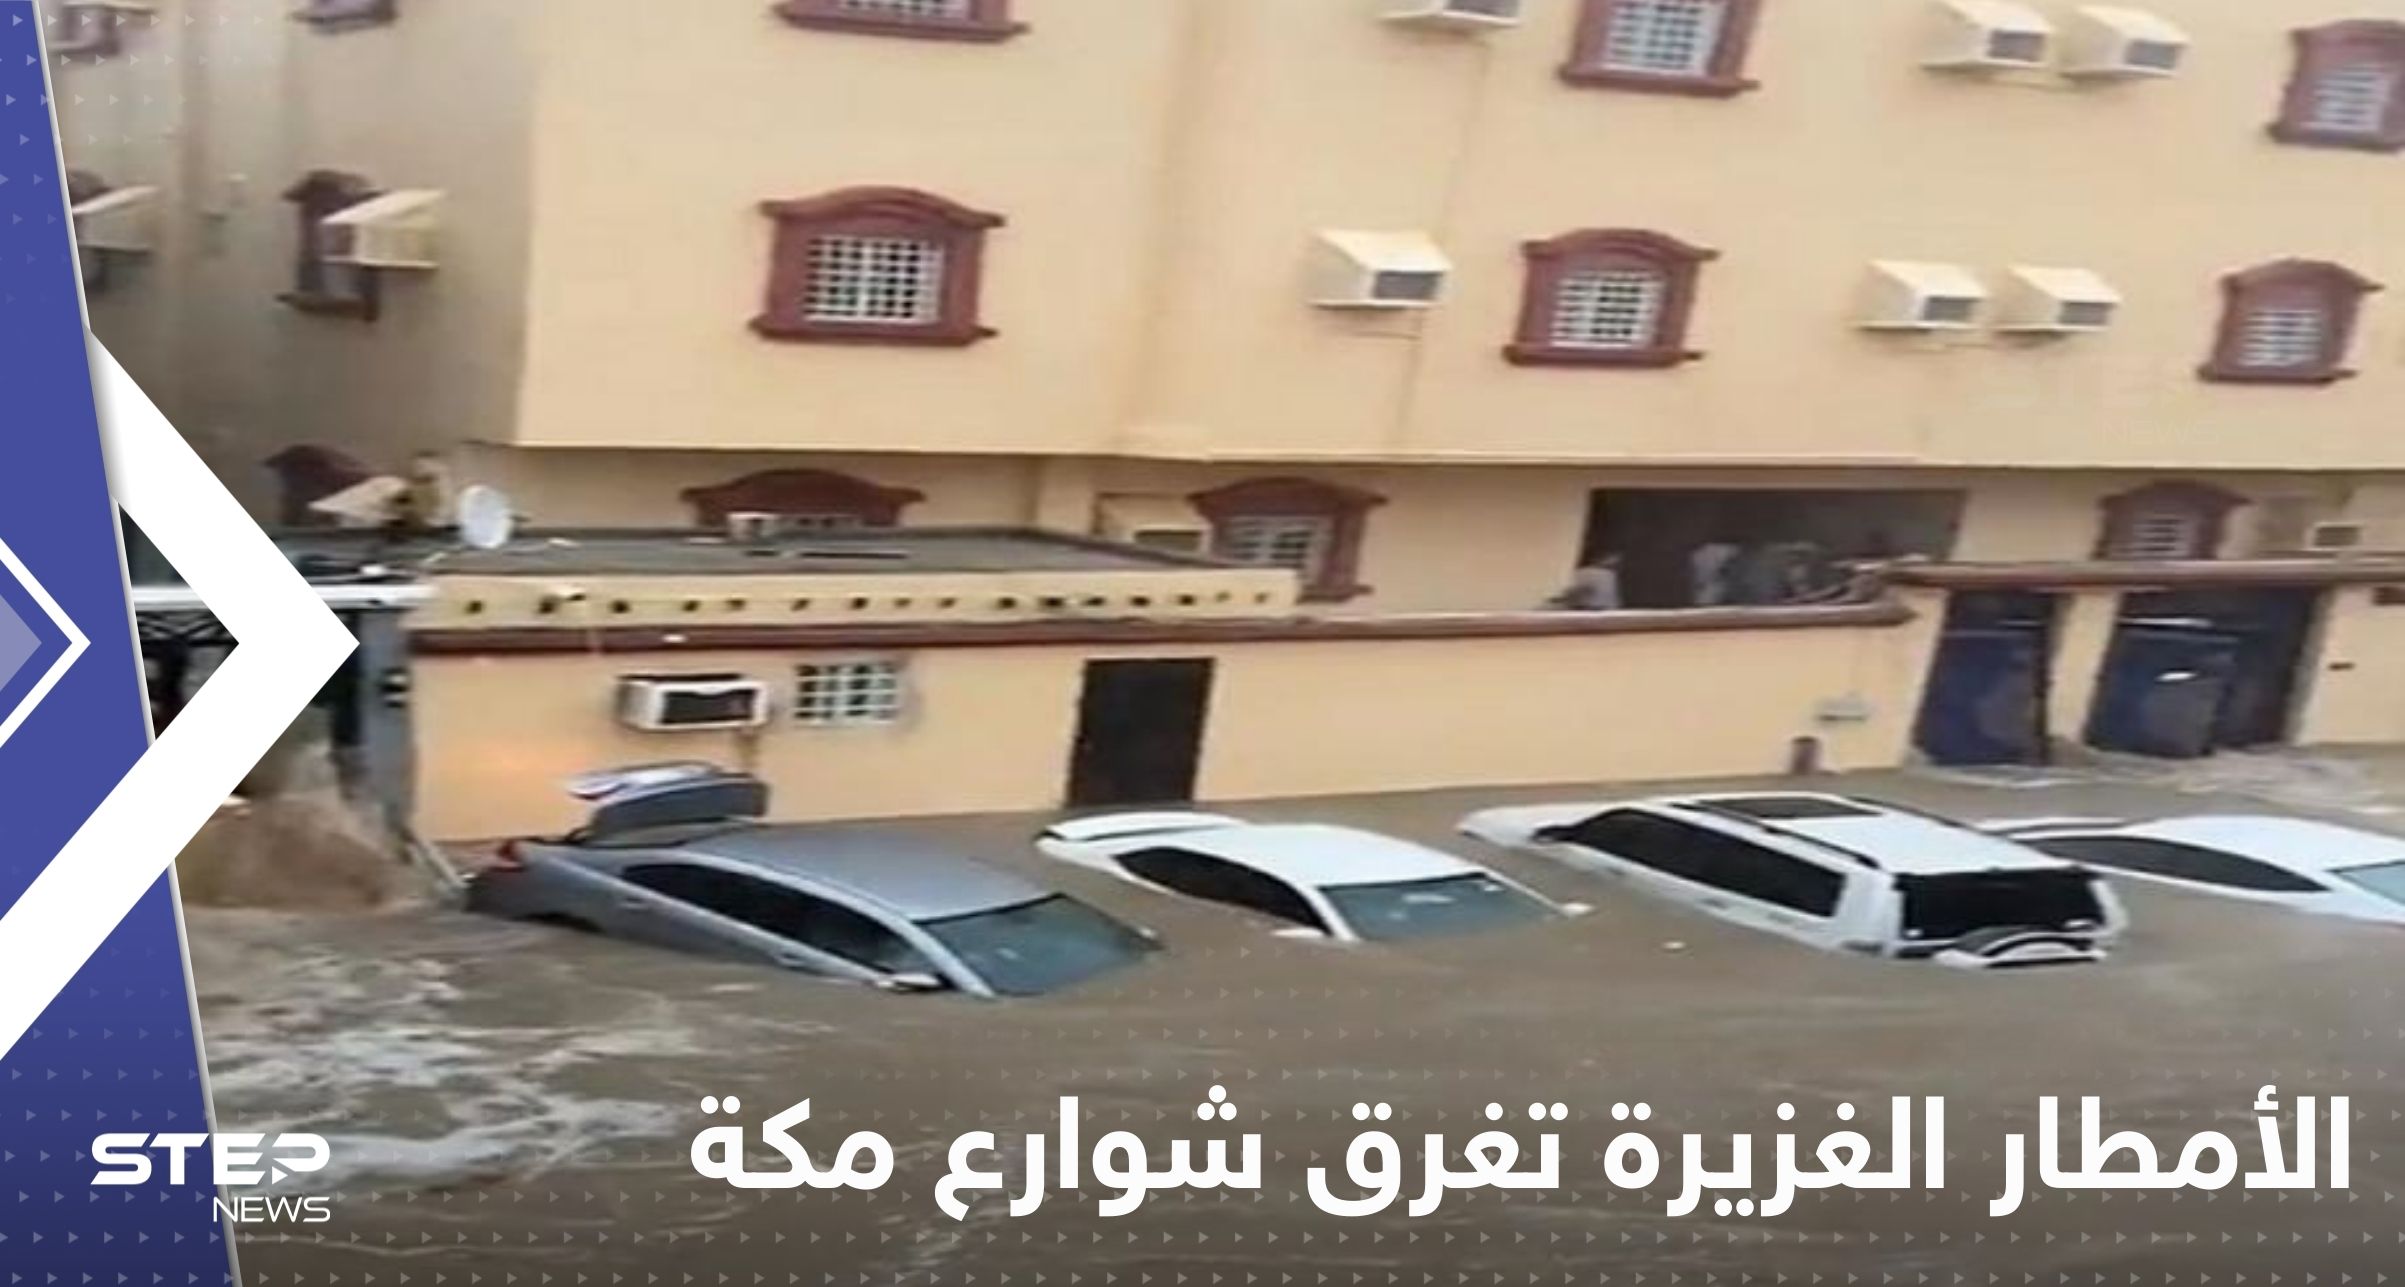 شاهد|| الأمطار الغزيرة تغرق شوارع مكة المكرمة.. السلطات علّقت الدراسة والمساجد طالبت بالصلاة في المنازل